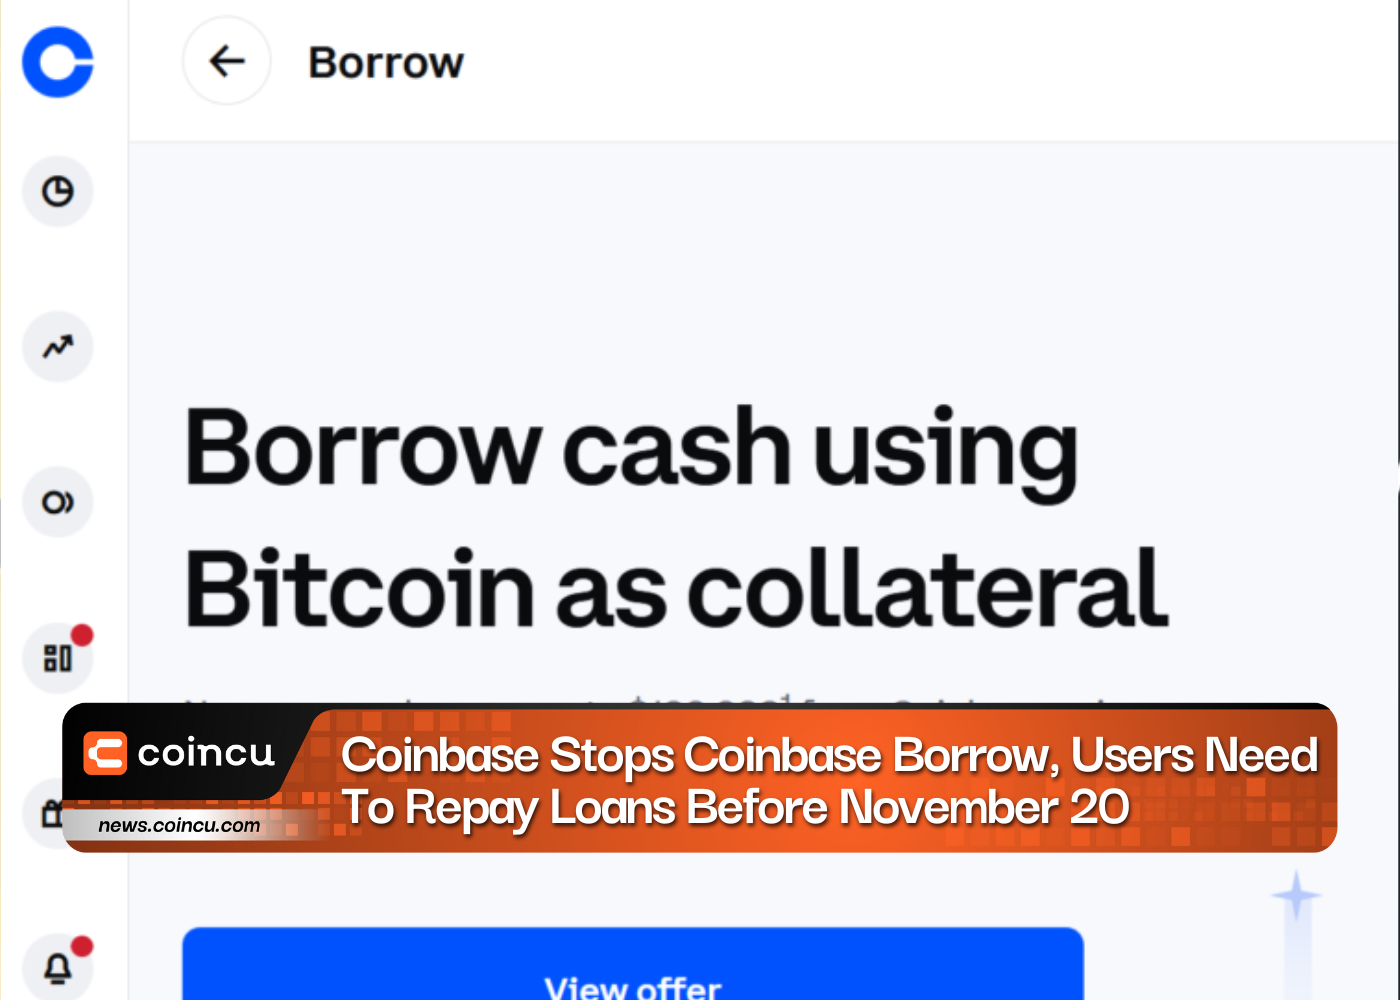 Coinbase Stops Coinbase Borrow, Users Need To Repay Loans Before November 20